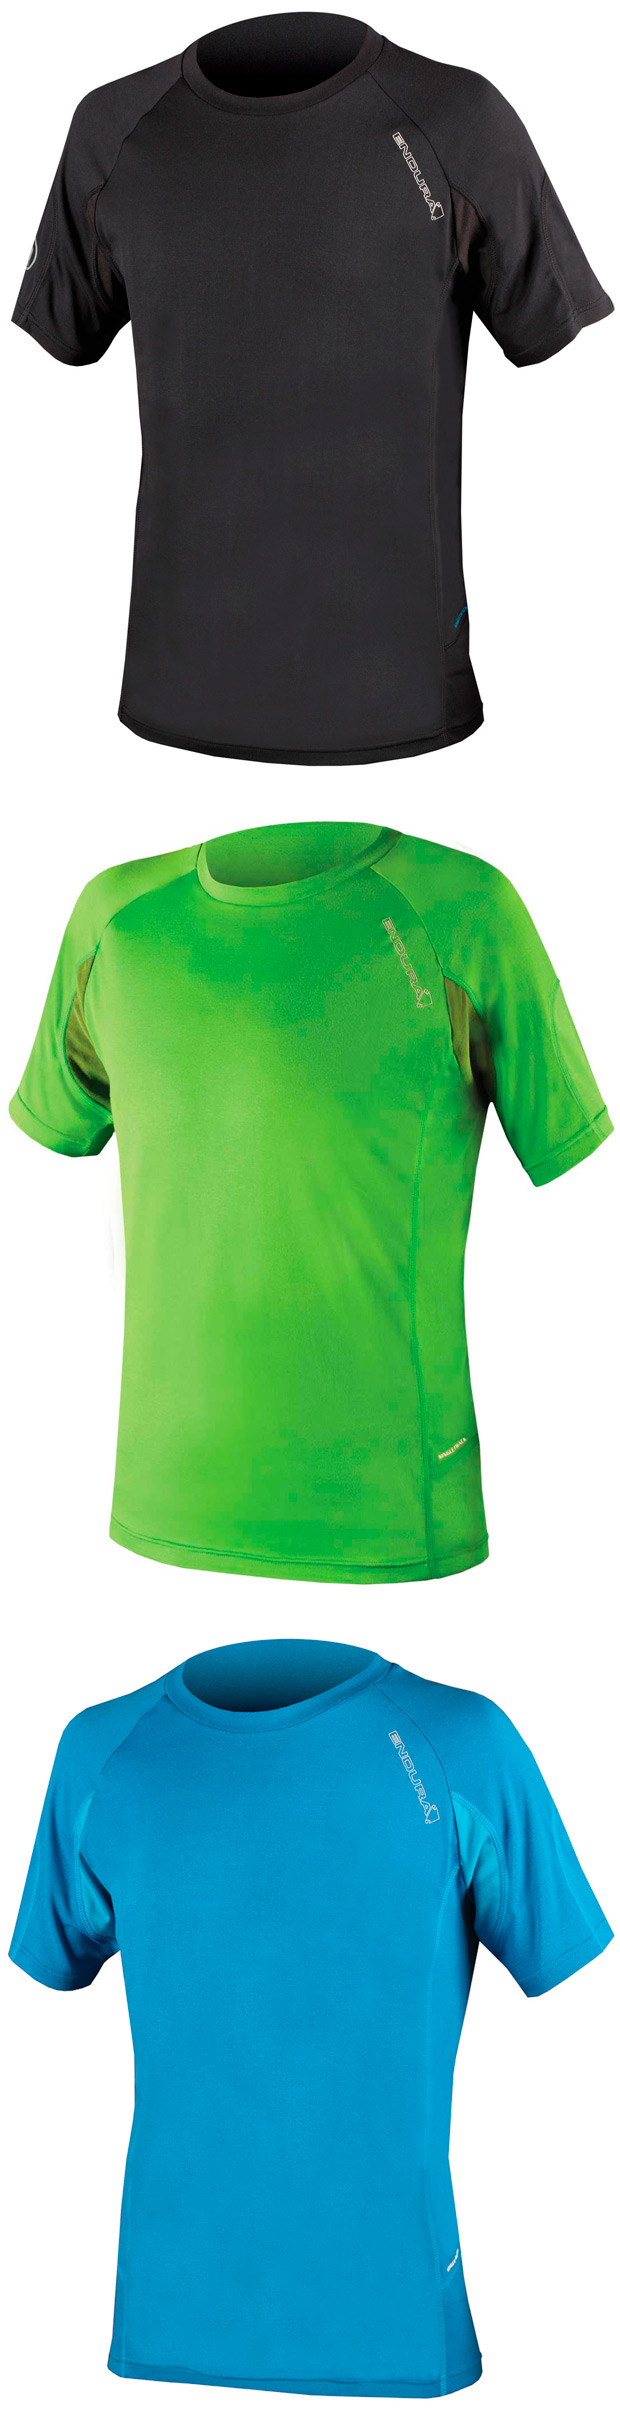 Enduro con estilo: Nuevas camisetas y maillots Endura Singletrack Lite